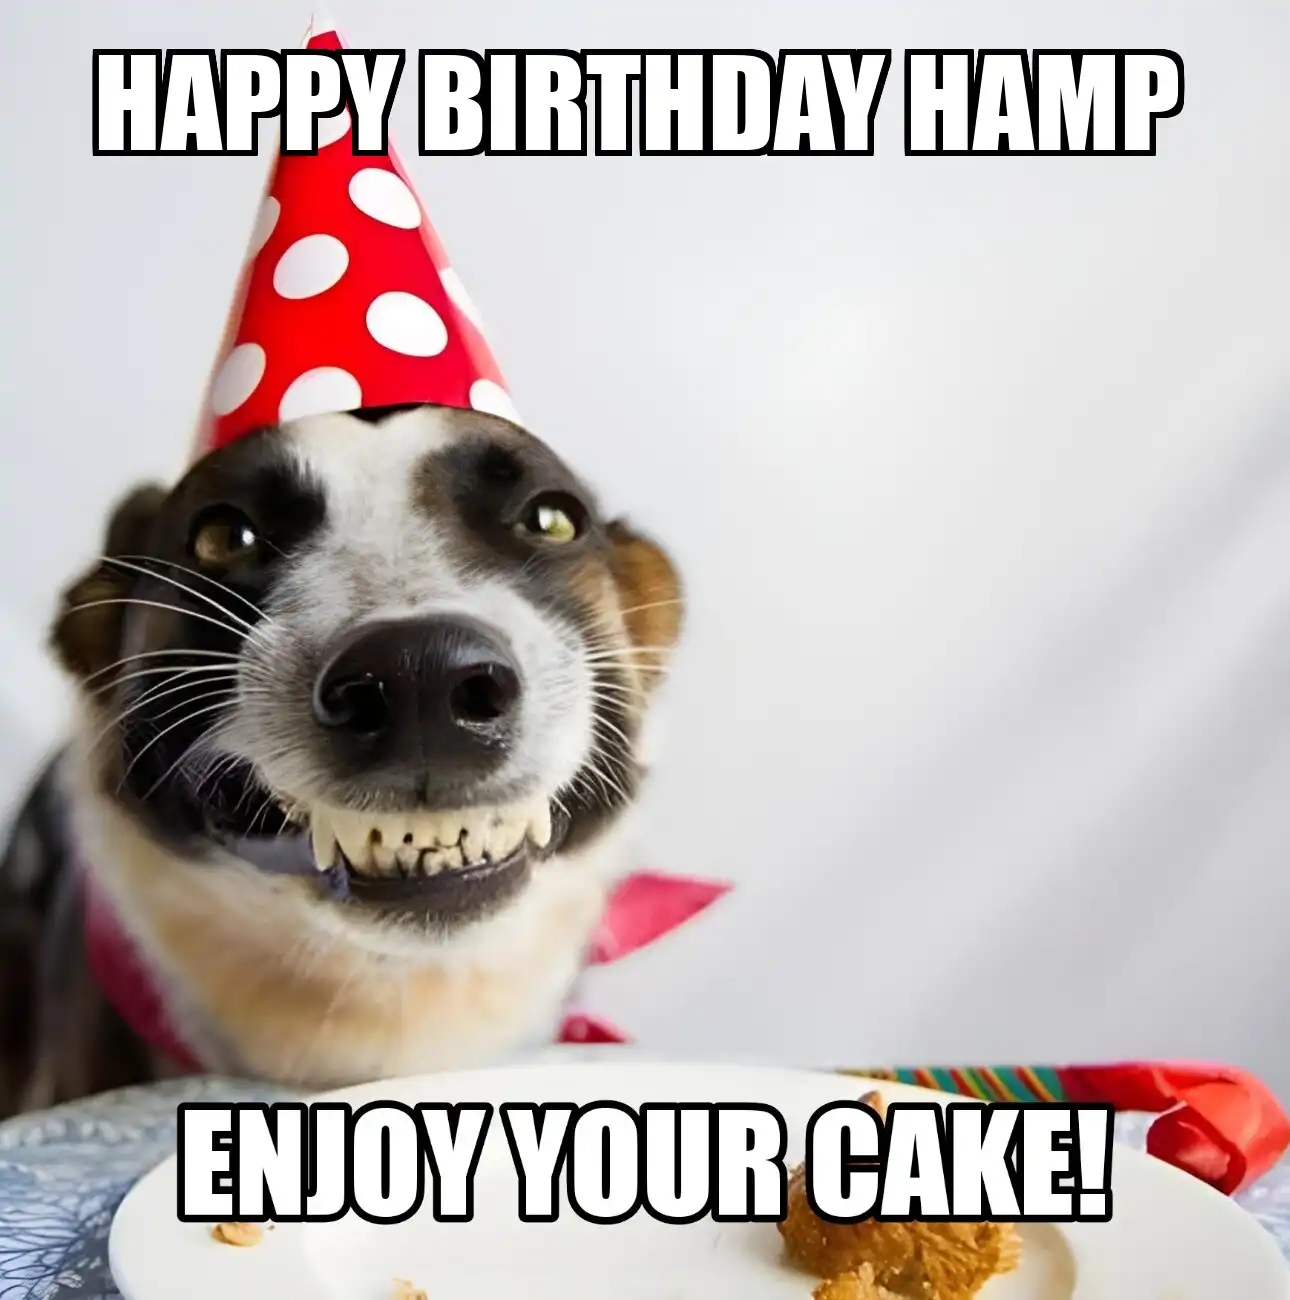 Happy Birthday Hamp Enjoy Your Cake Dog Meme